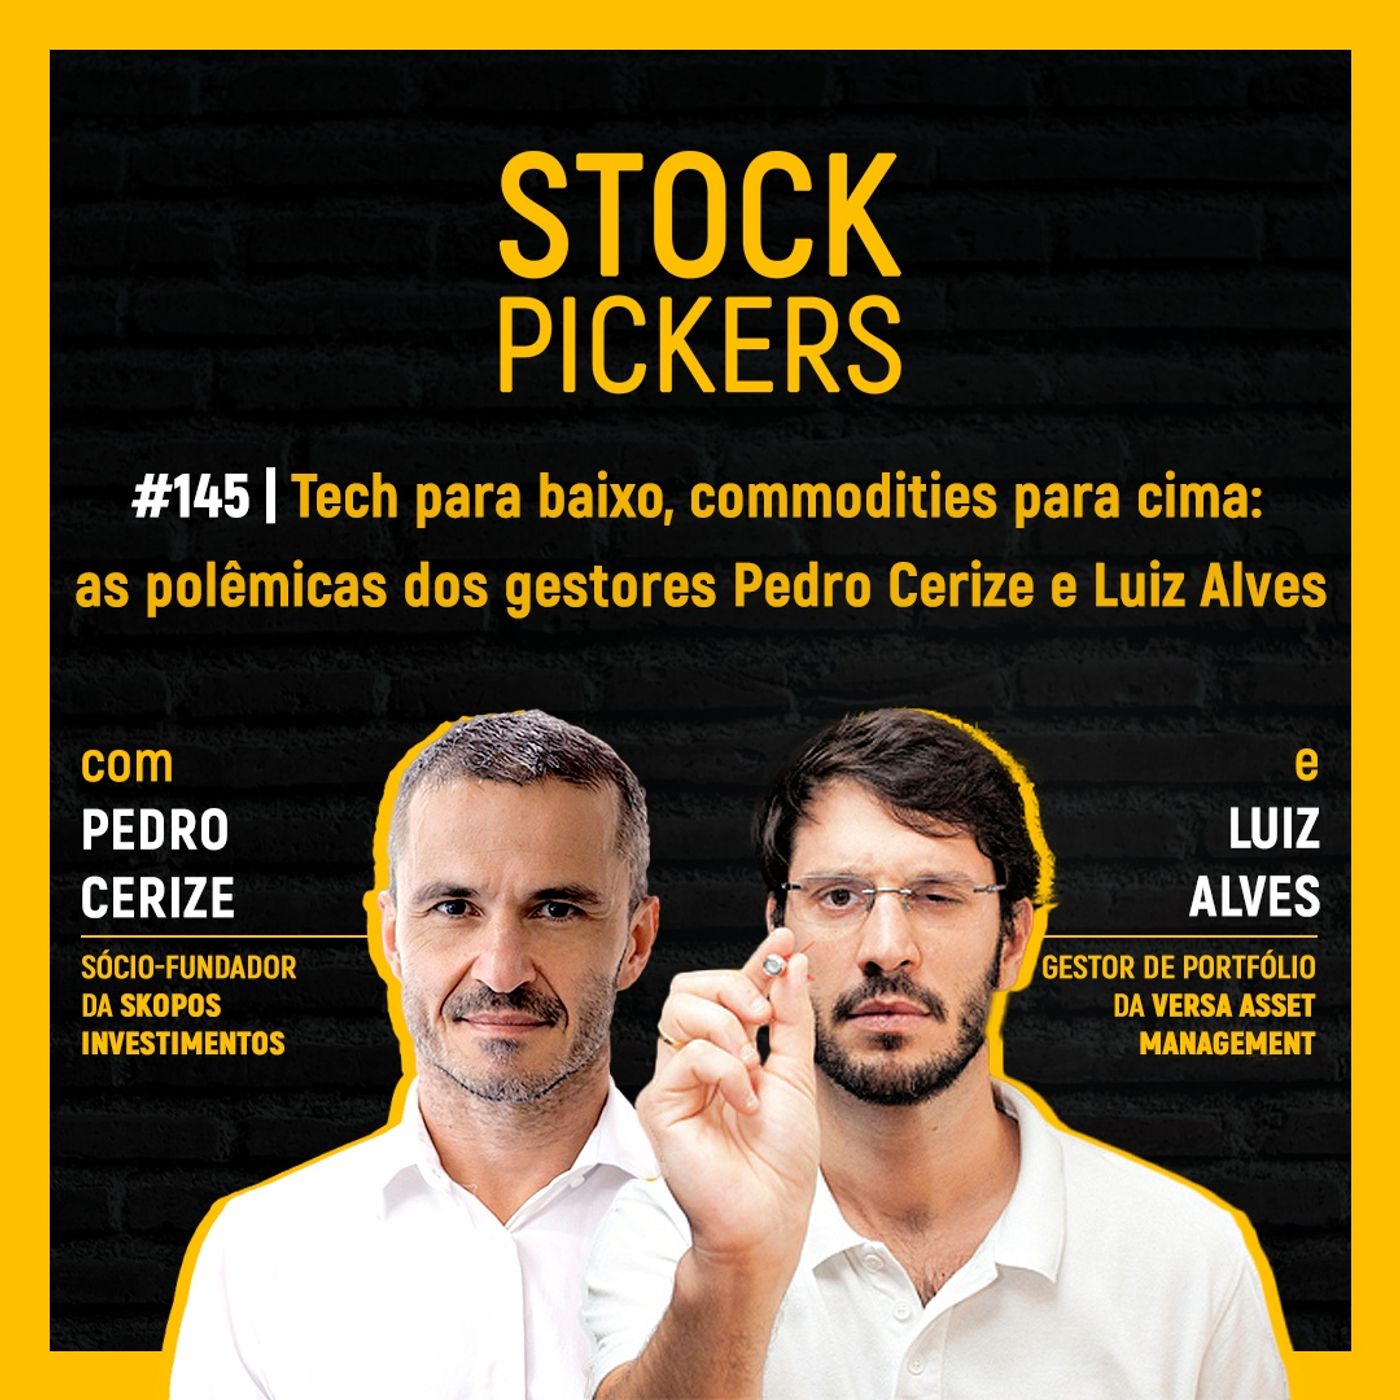 #145 Tech para baixo, commodities para cima: as polêmicas dos gestores Pedro Cerize e Luiz Alves